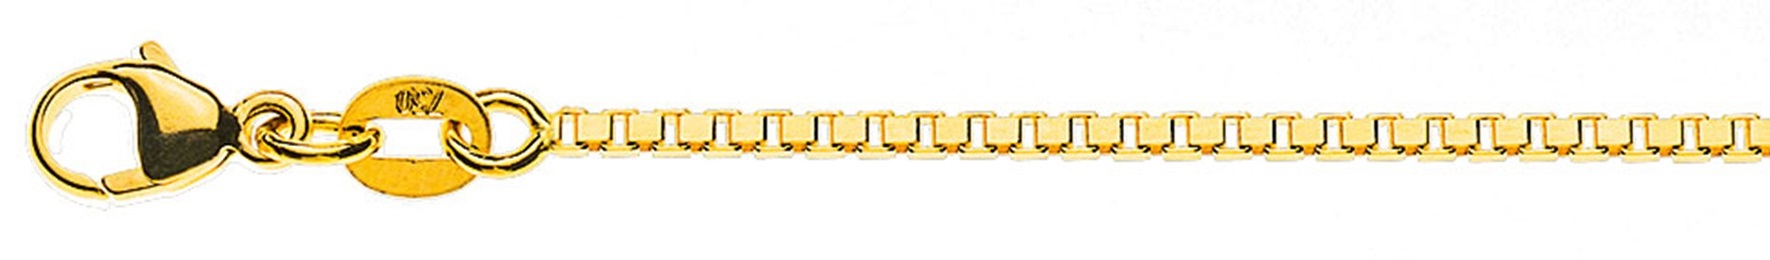 AURONOS Prestige Halskette Gelbgold 18K Venezianerkette diamantiert 40cm 1.4mm